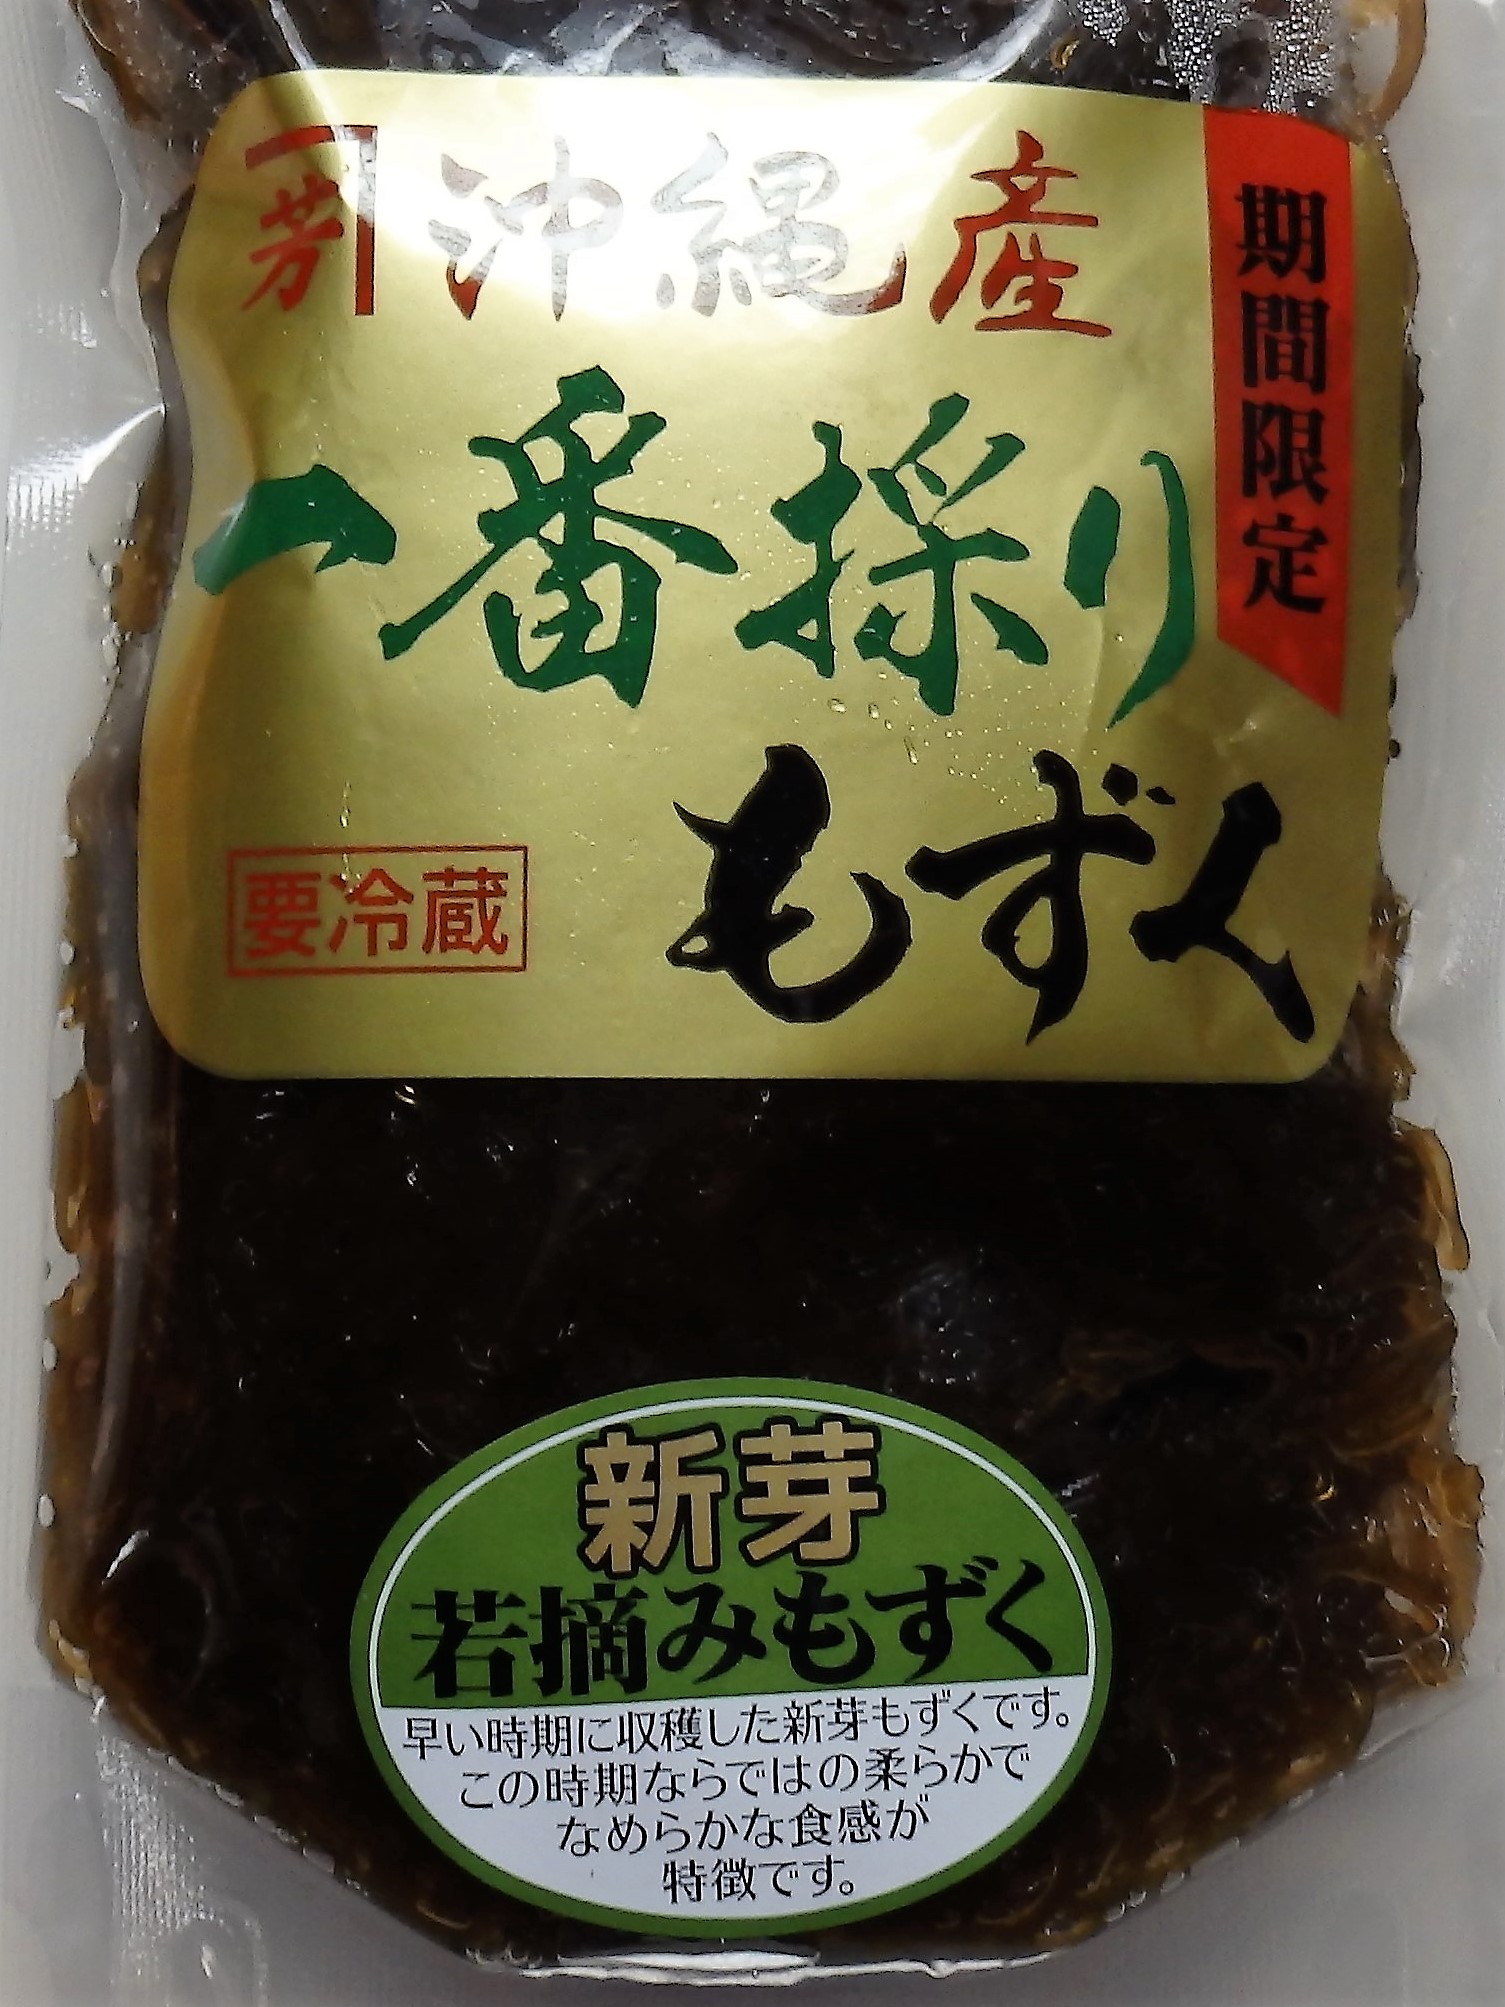 完成品 もずく 太もずく 沖縄県産 300g そのまますぐ食べれます 冷凍